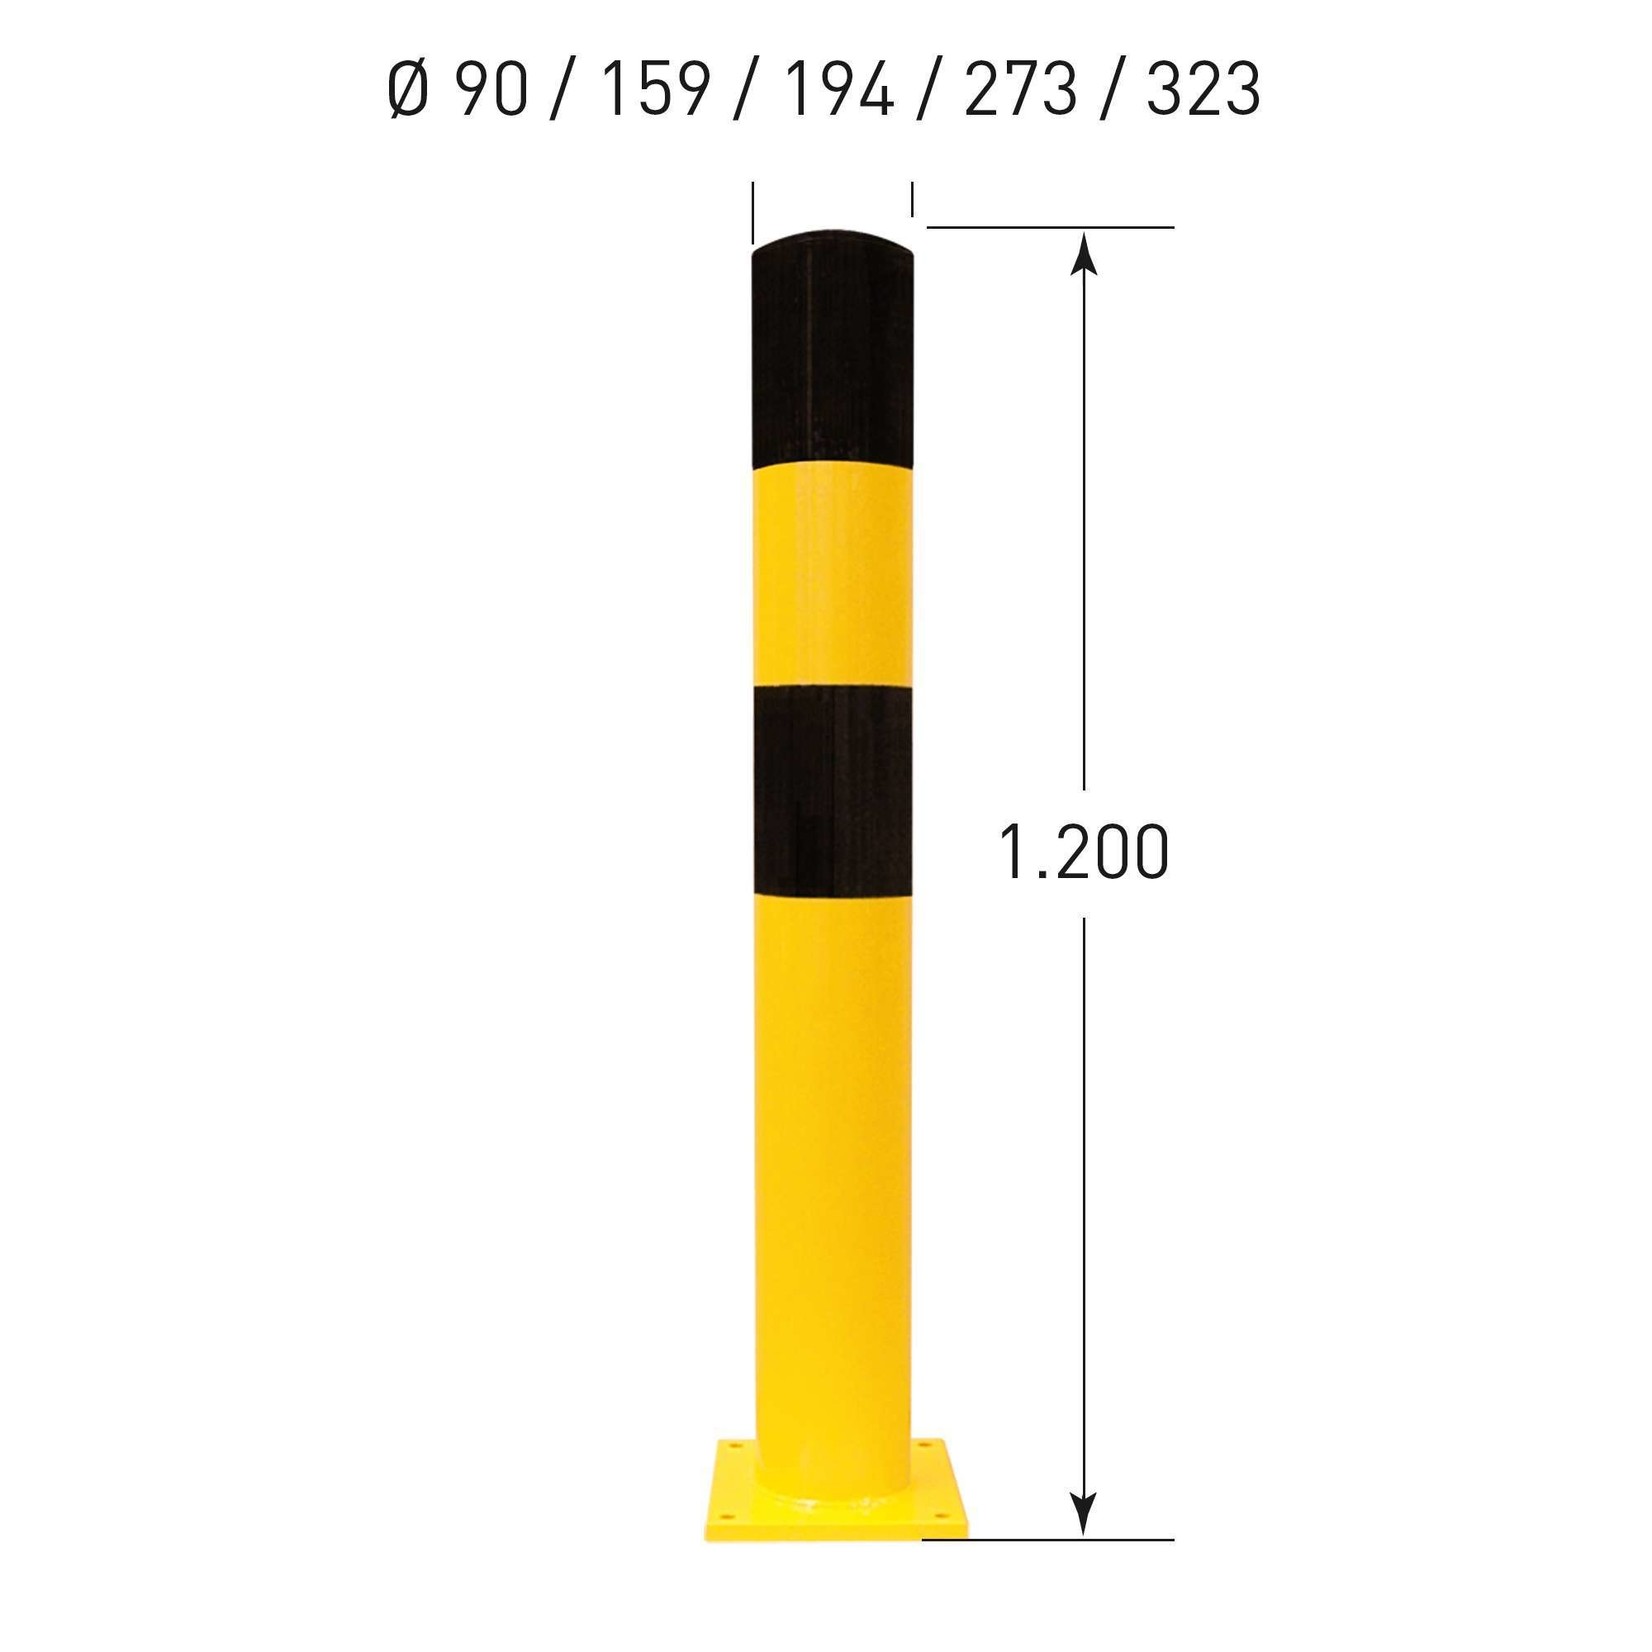 BLACK BULL rampaal S op voetplaat - Ø90 mm - verzinkt/gecoat - geel/zwart